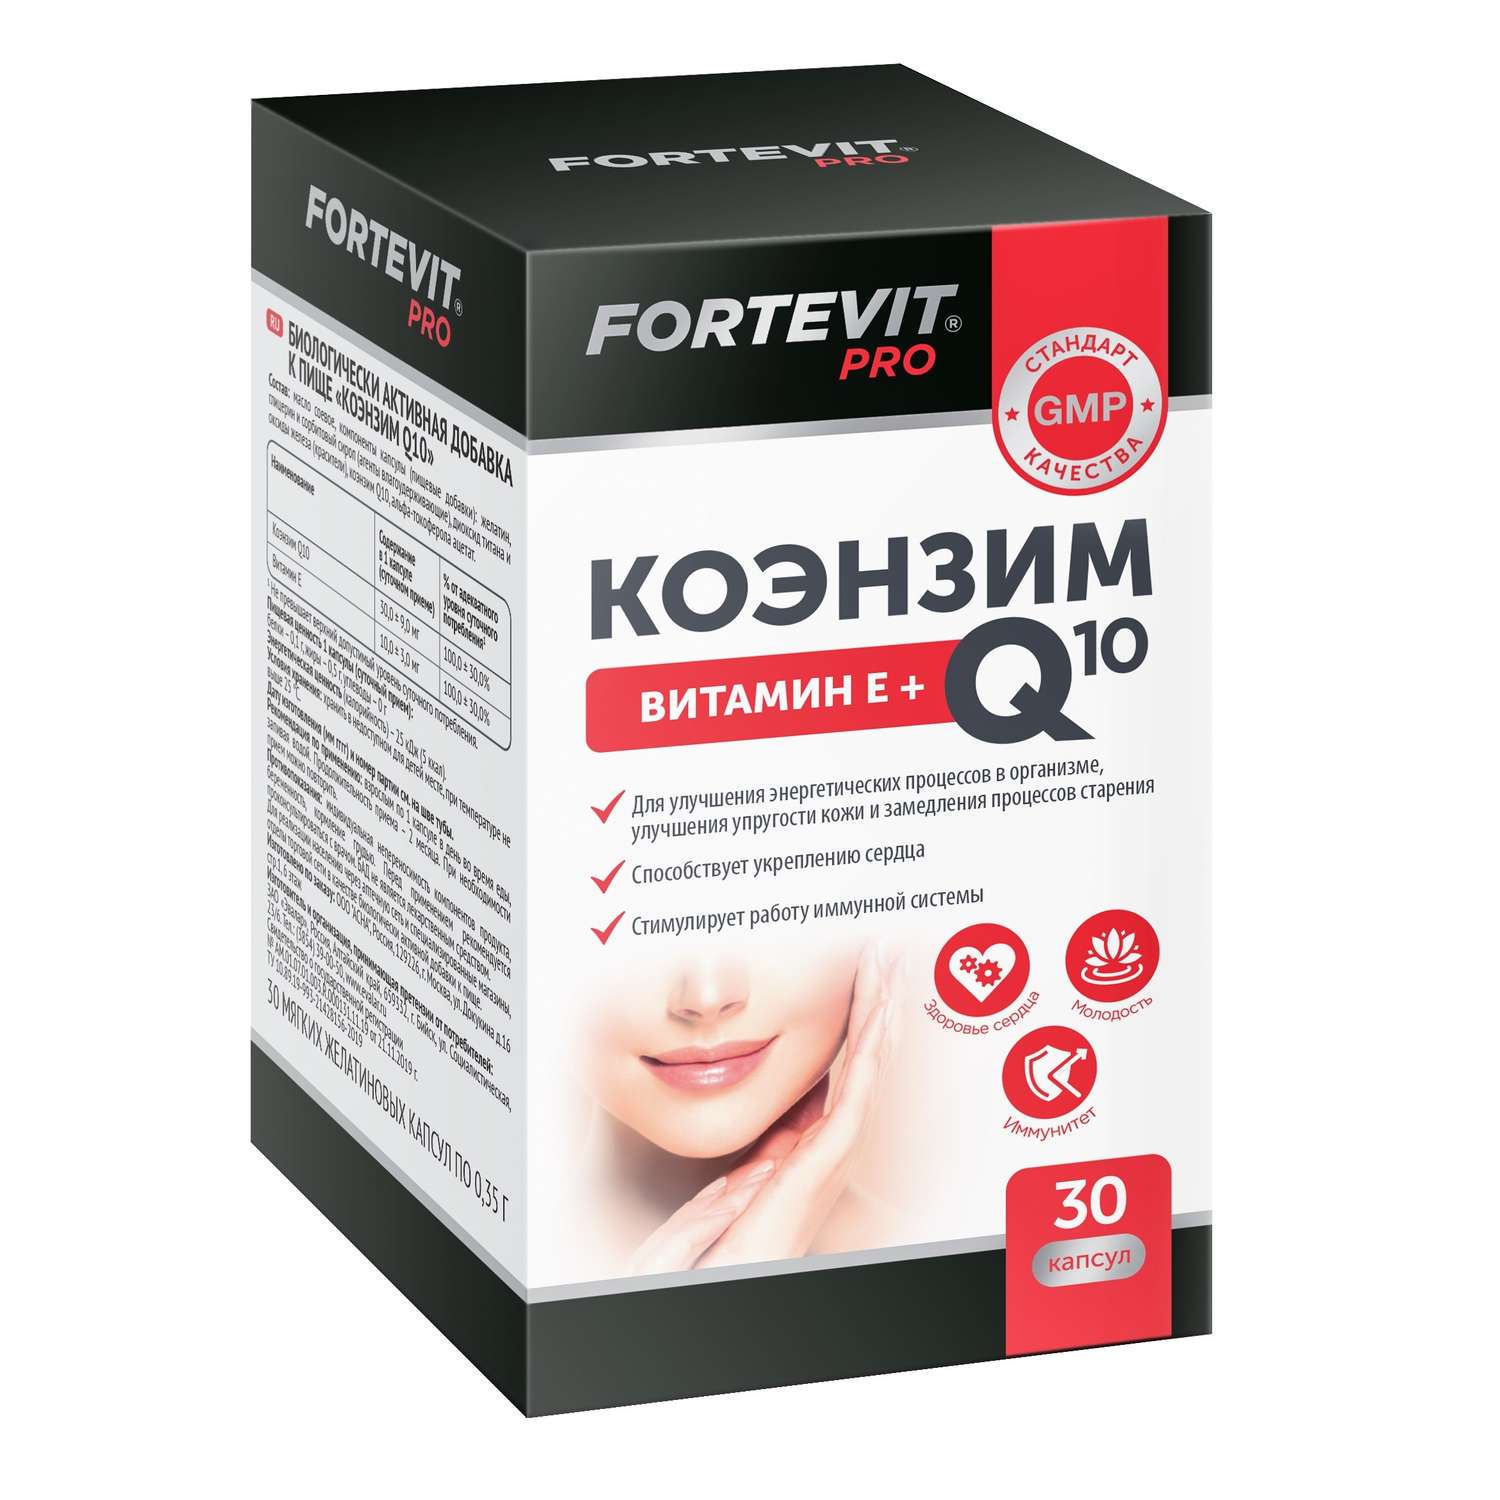 Биологически активная добавка Fortevit Про Коэнзим Q10 30таблеток - фото 1